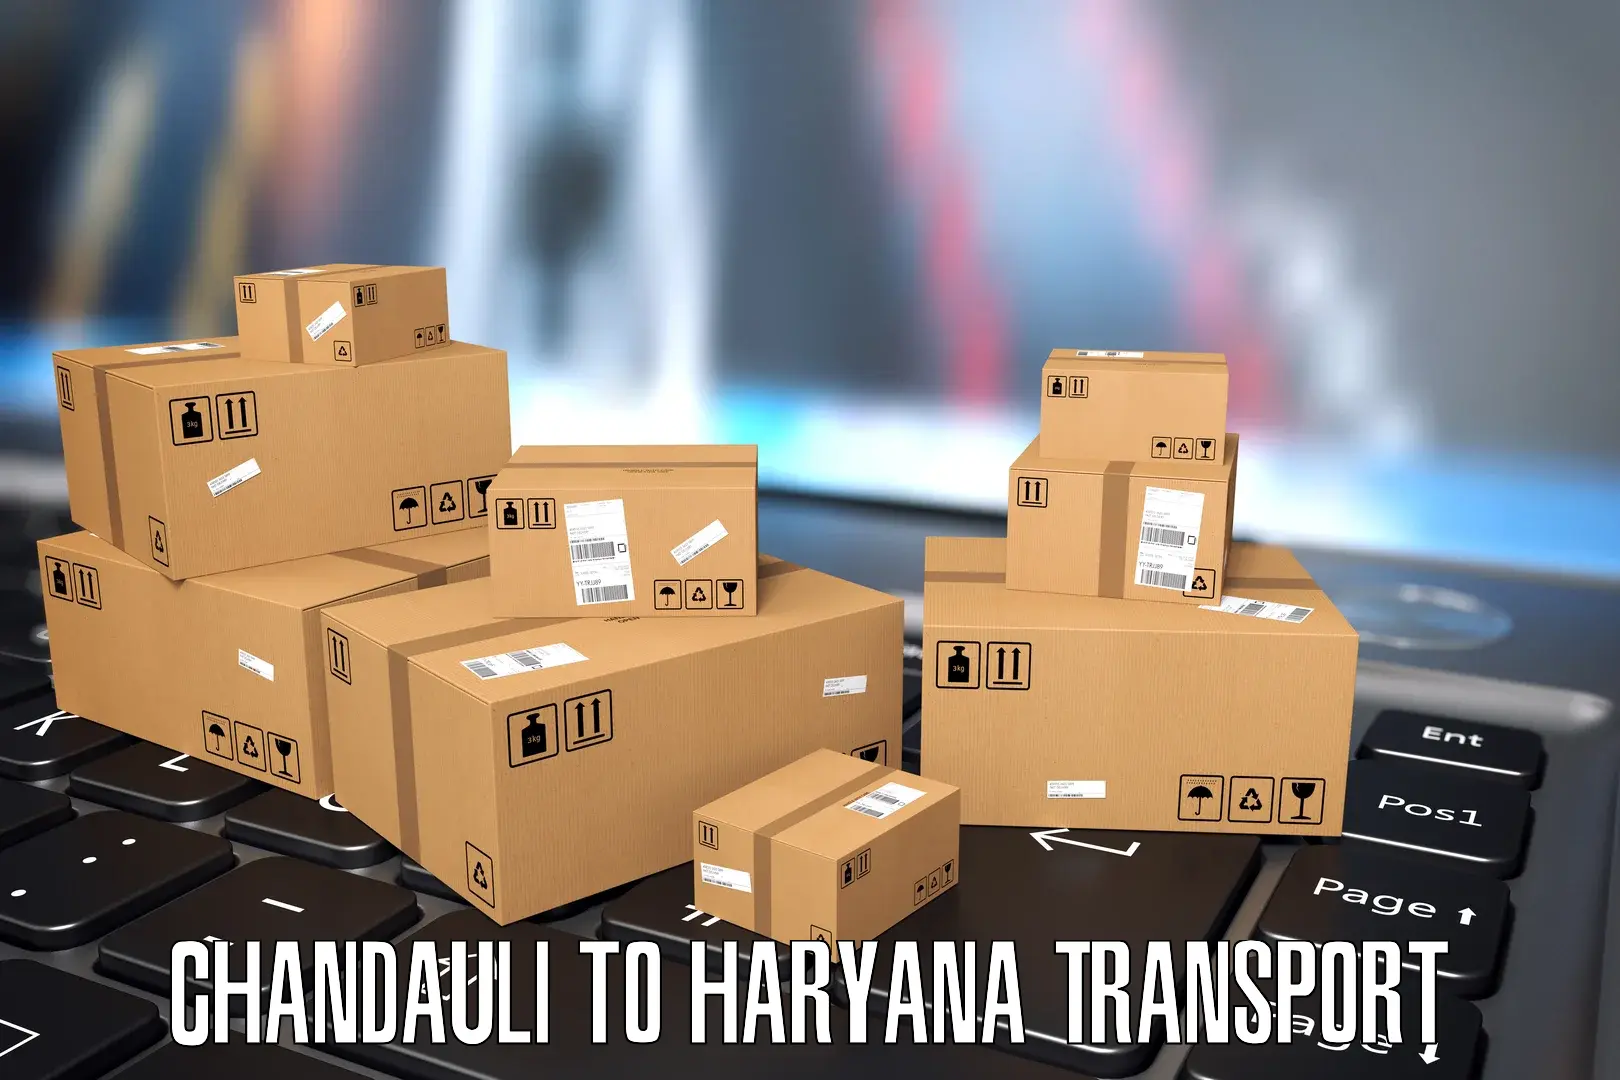 Daily transport service Chandauli to Mandi Dabwali